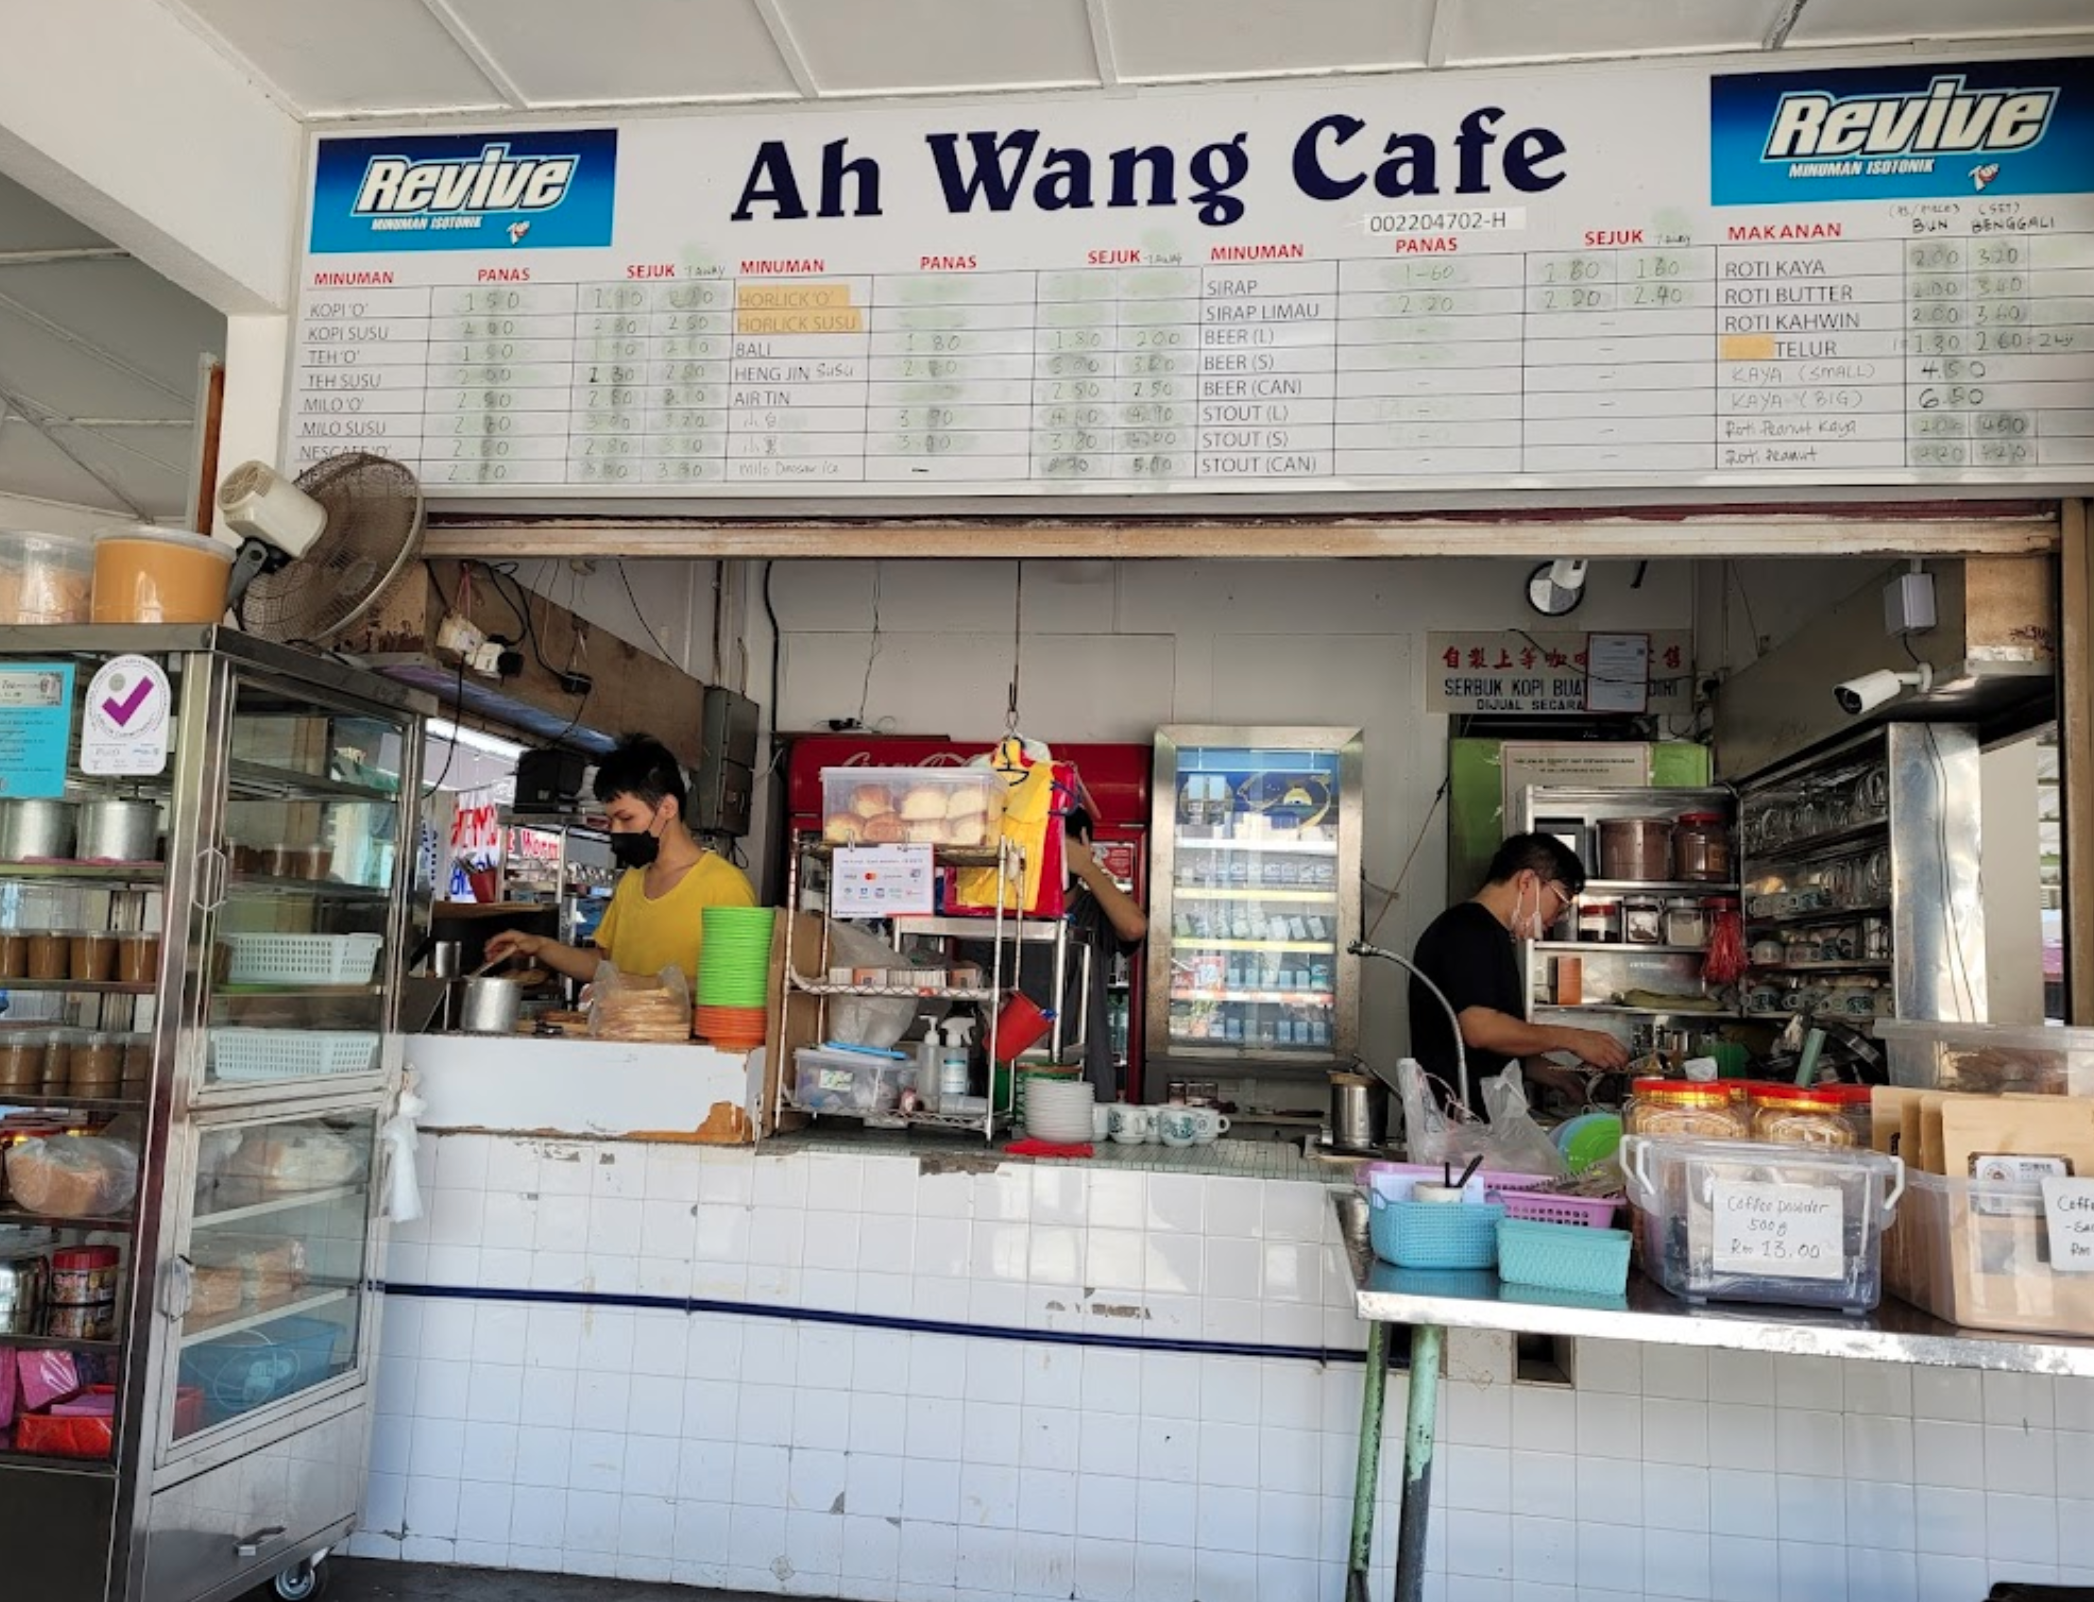 Ah Wang Cafe